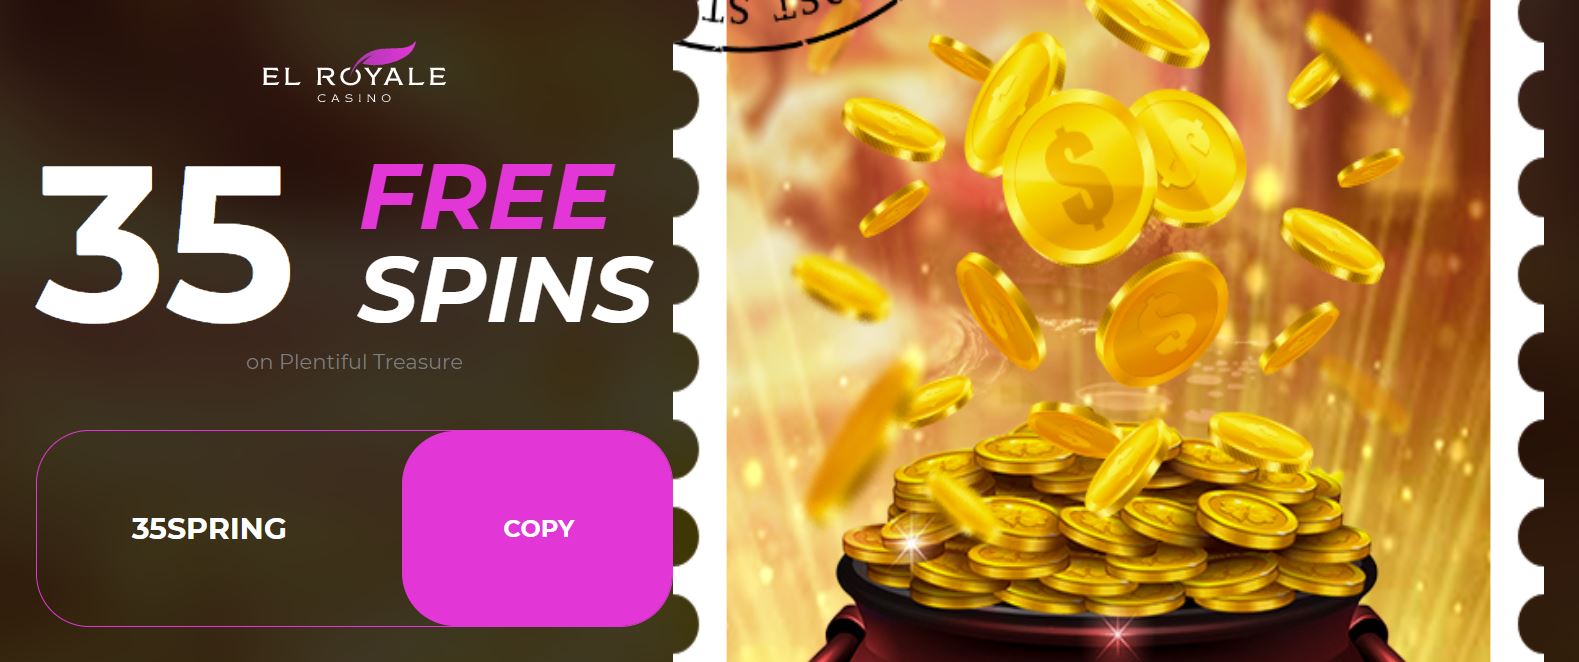 free bonus deposit codes for casinos